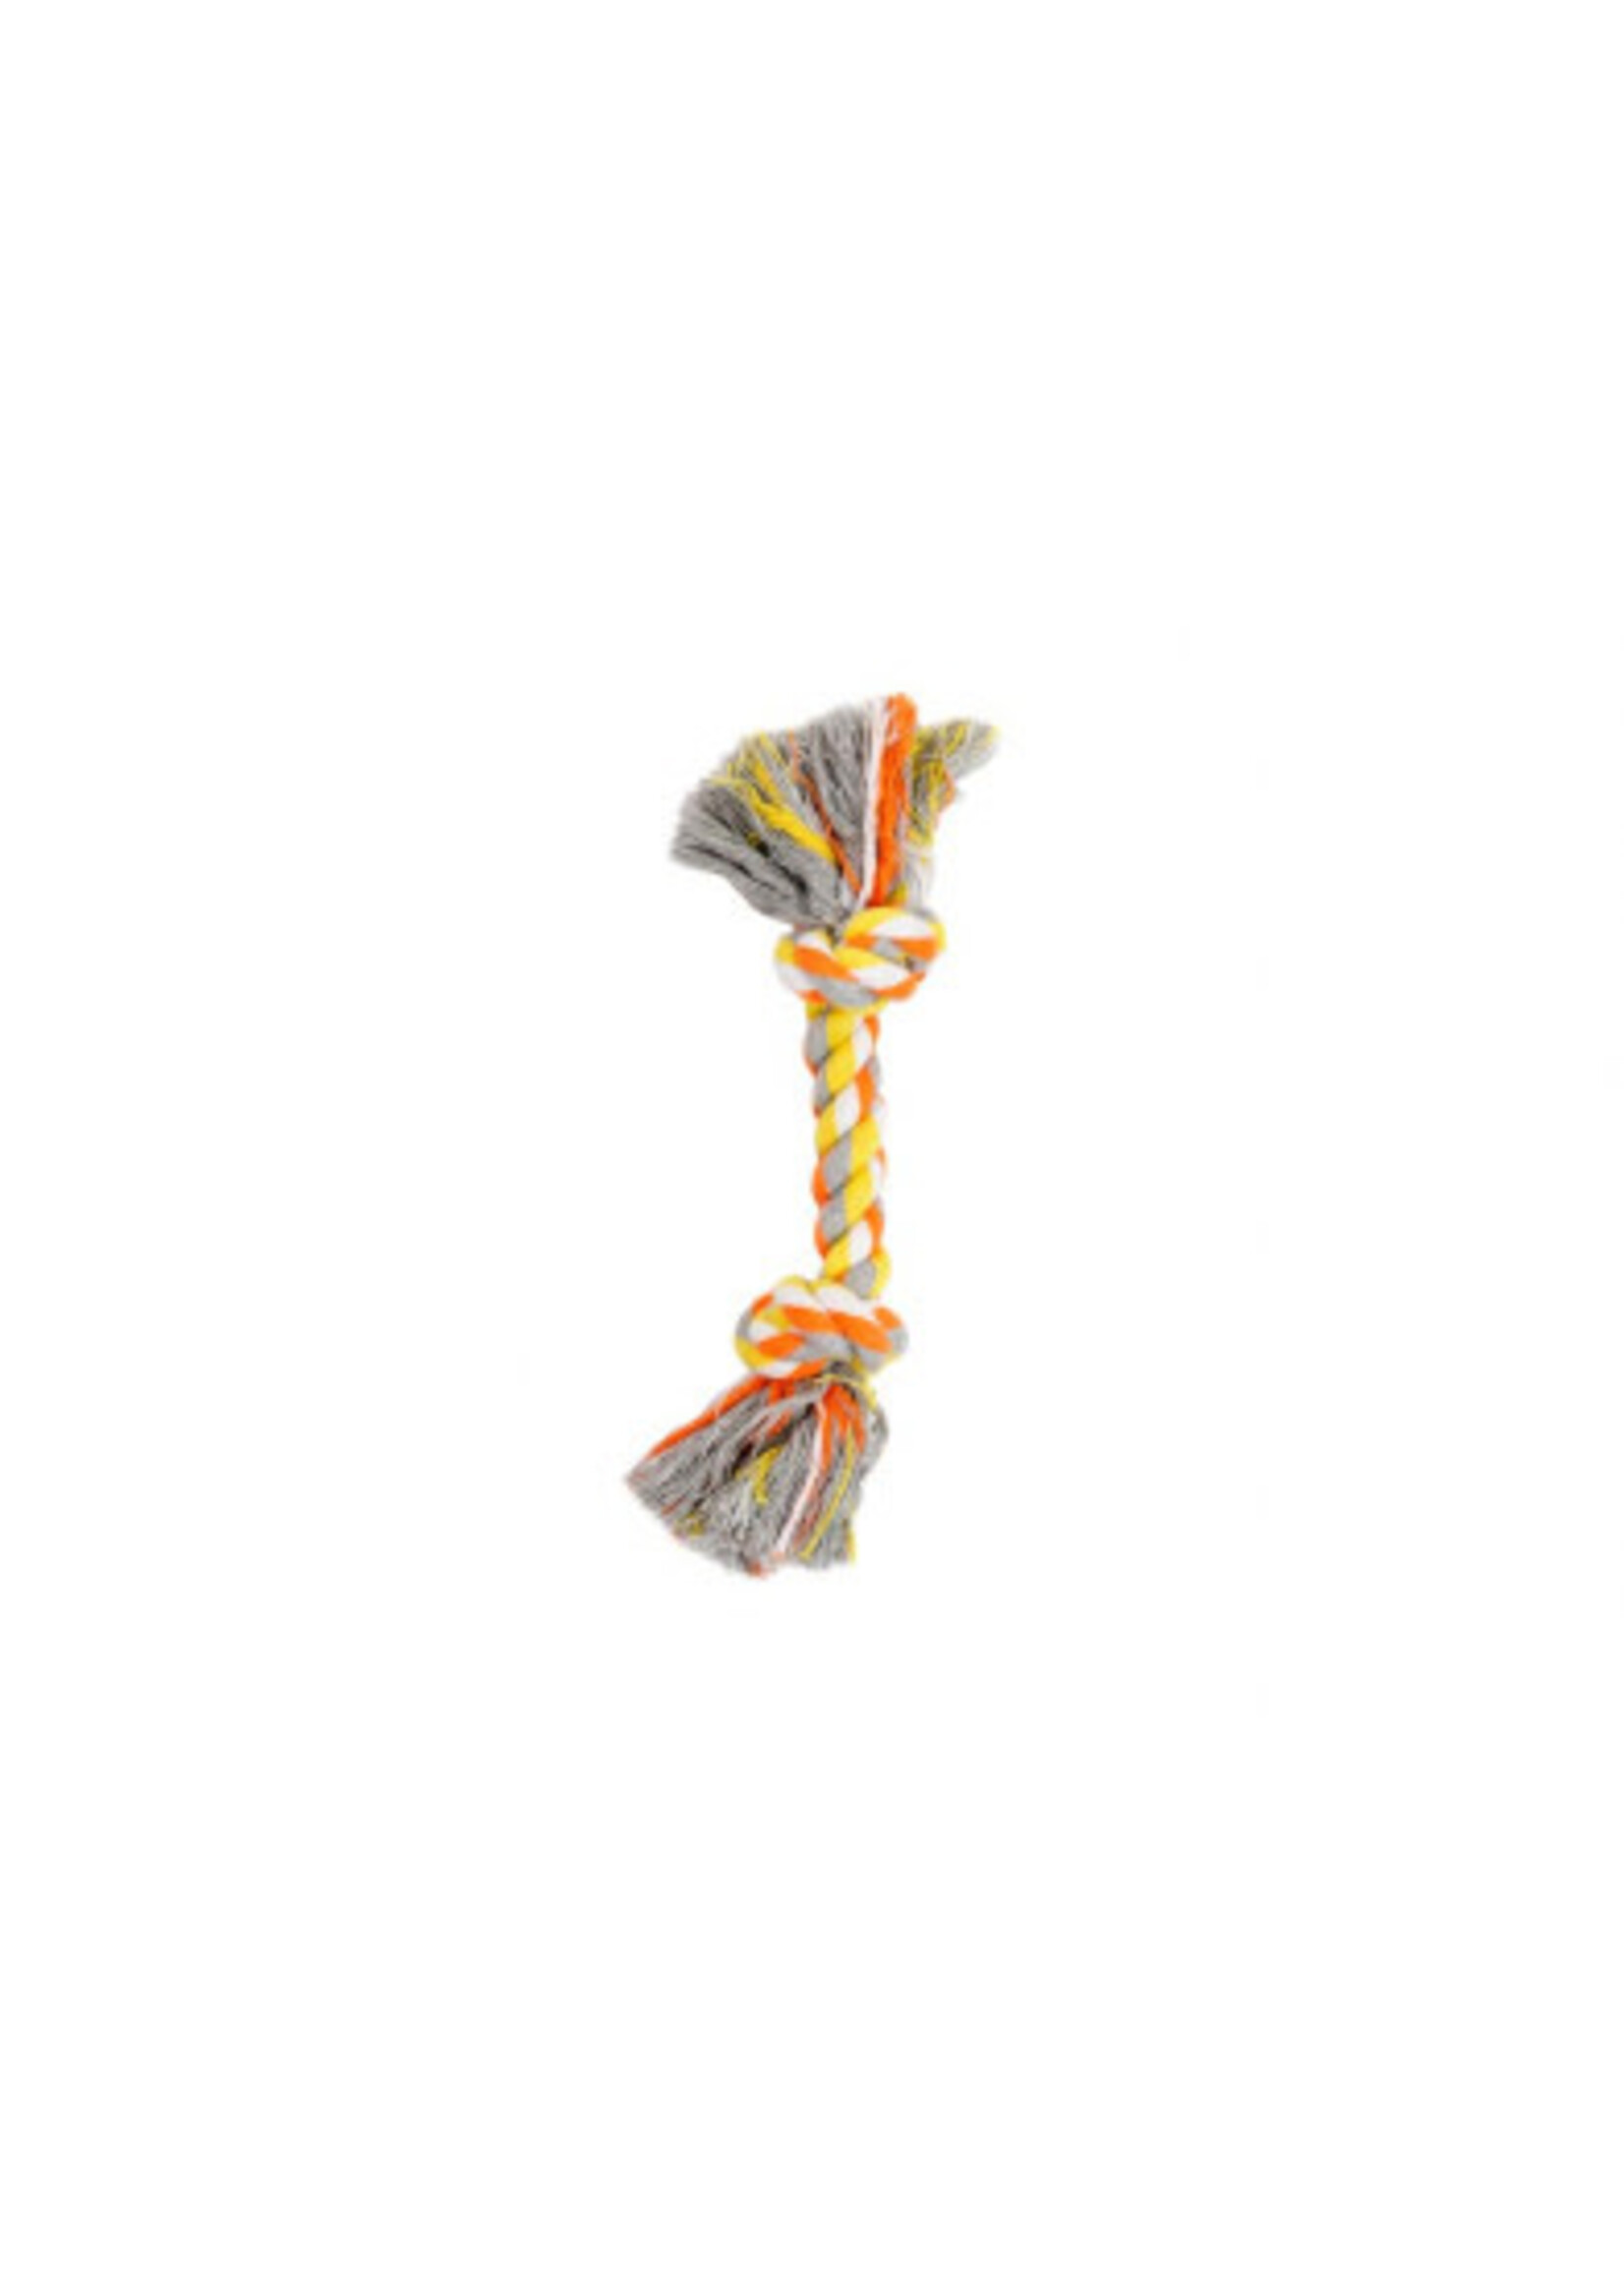 Budz Budz - Rope with 2 Knots Orange & Yellow 8.5"